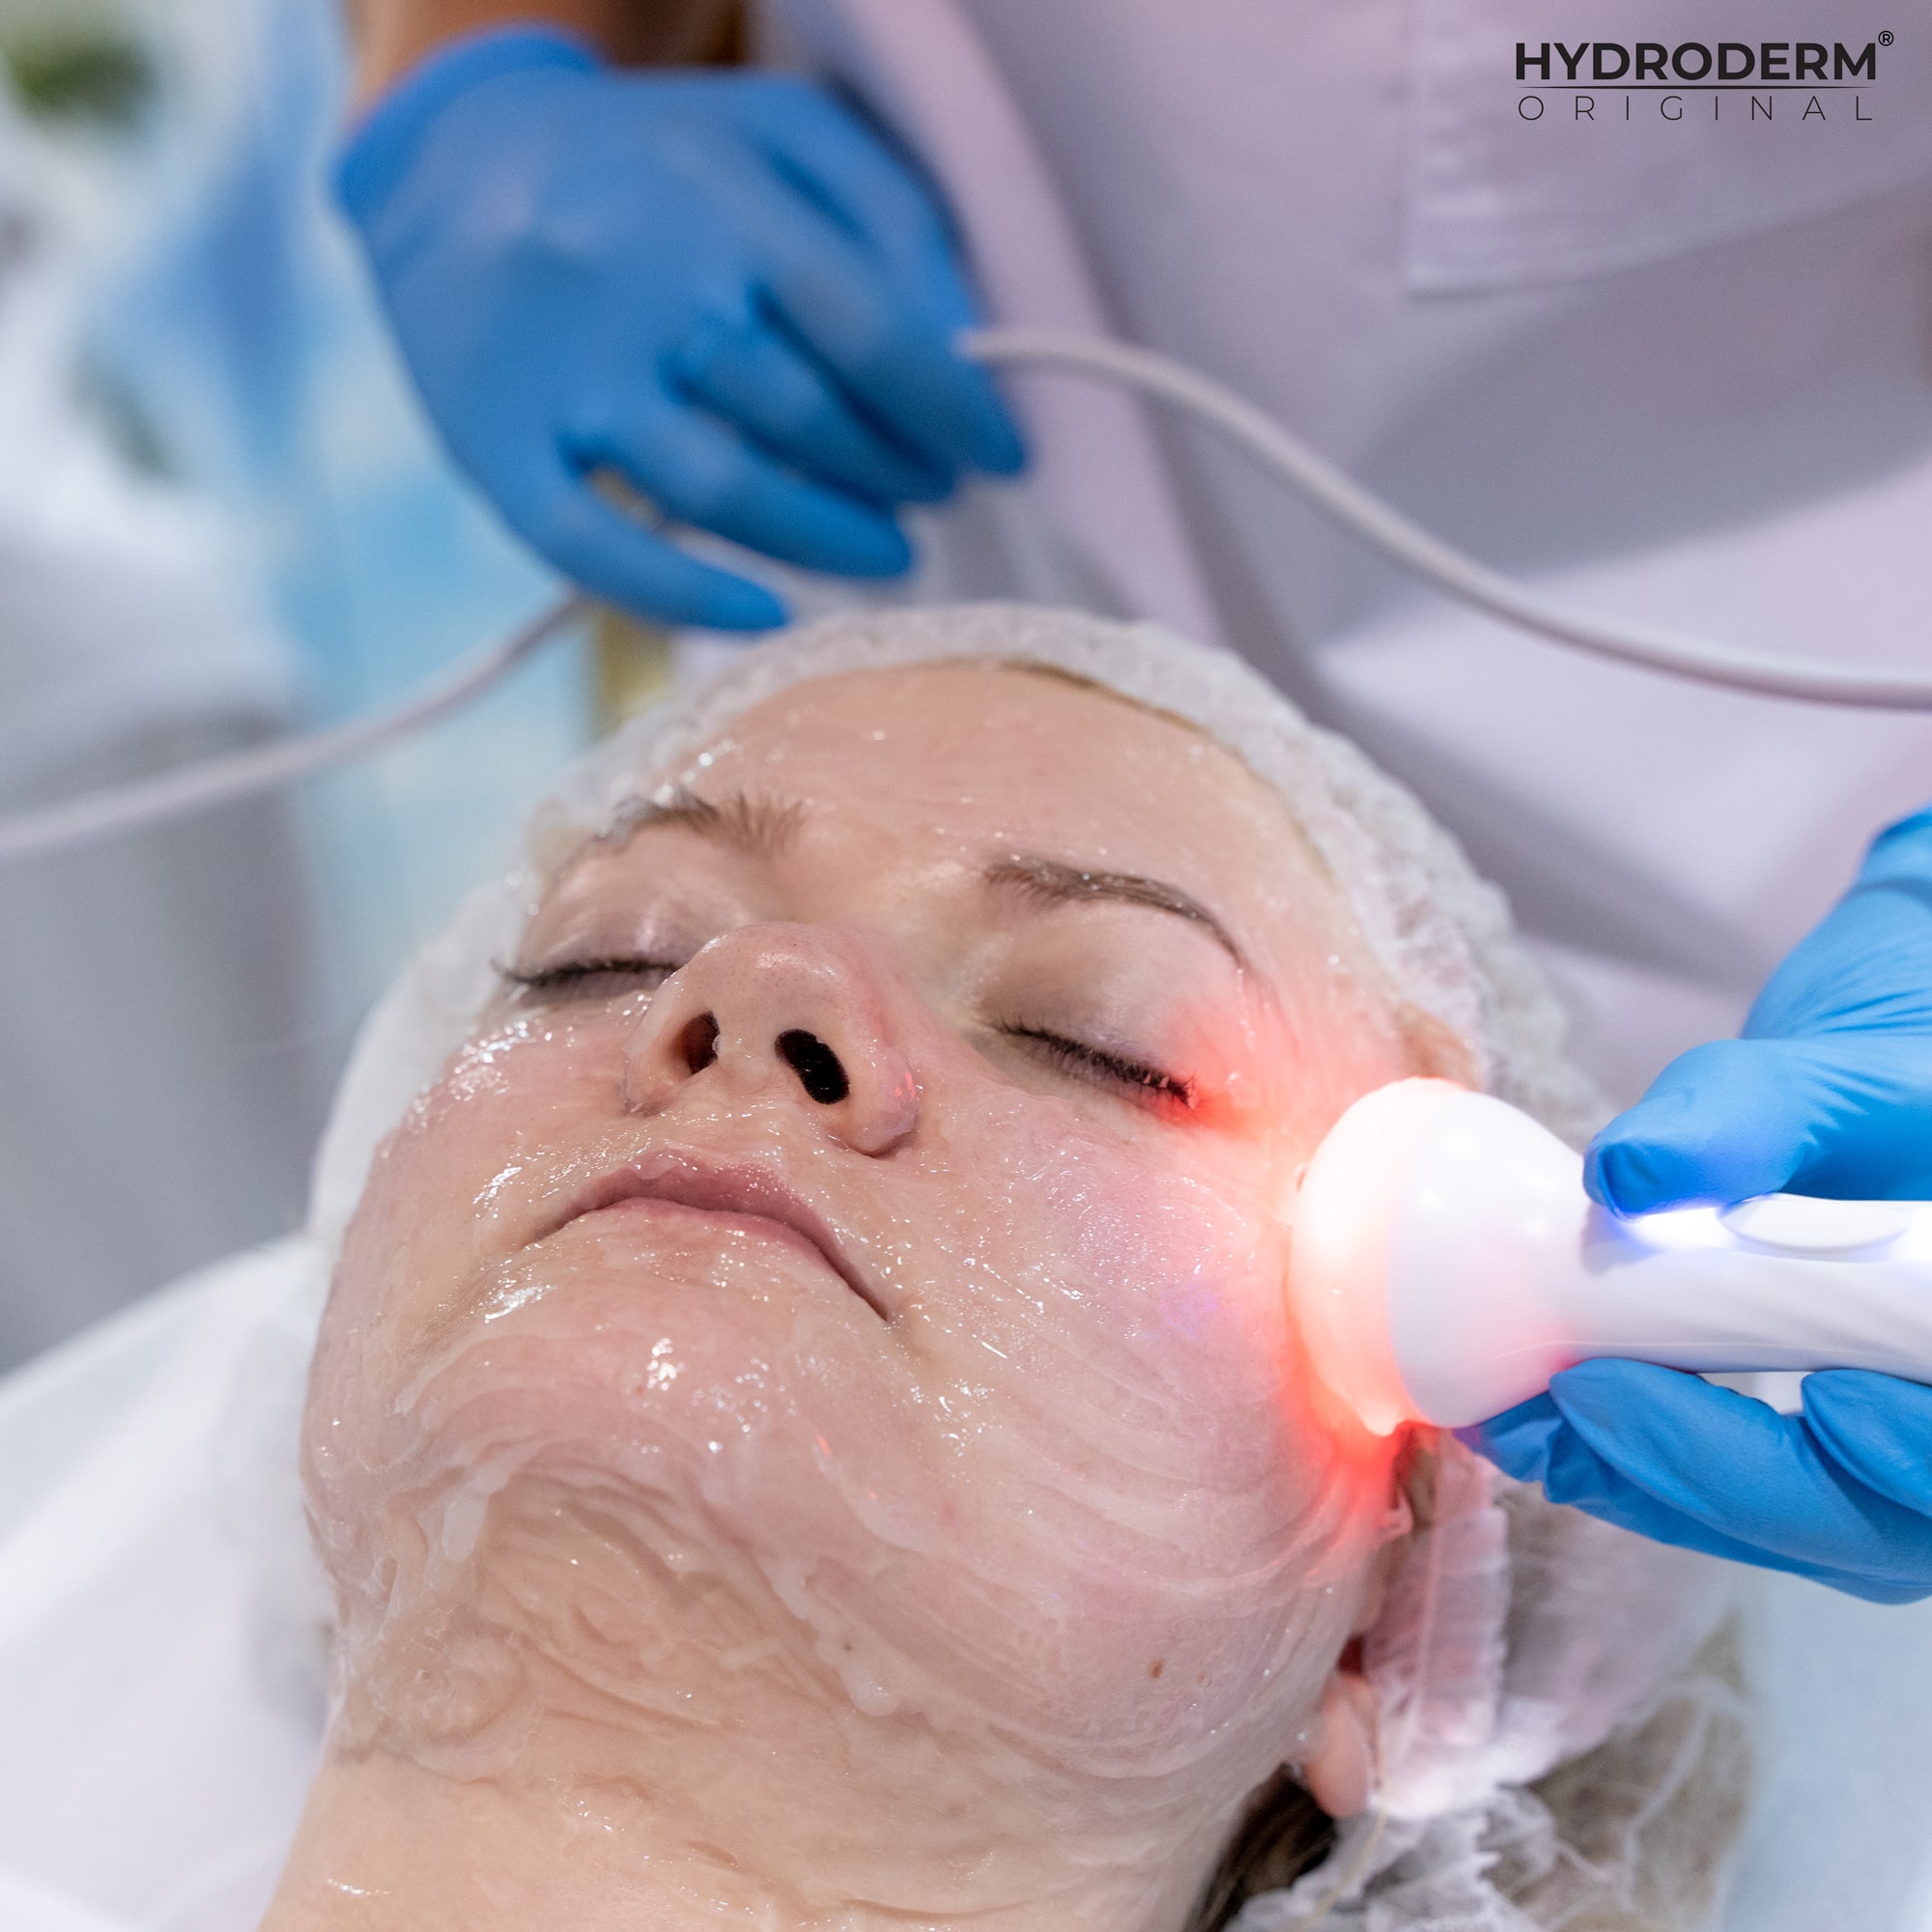 Funkcja fototerapii LED umożliwia potęgować efekty terapii takie jak redukcja zmarszczek czy napięcie skóry